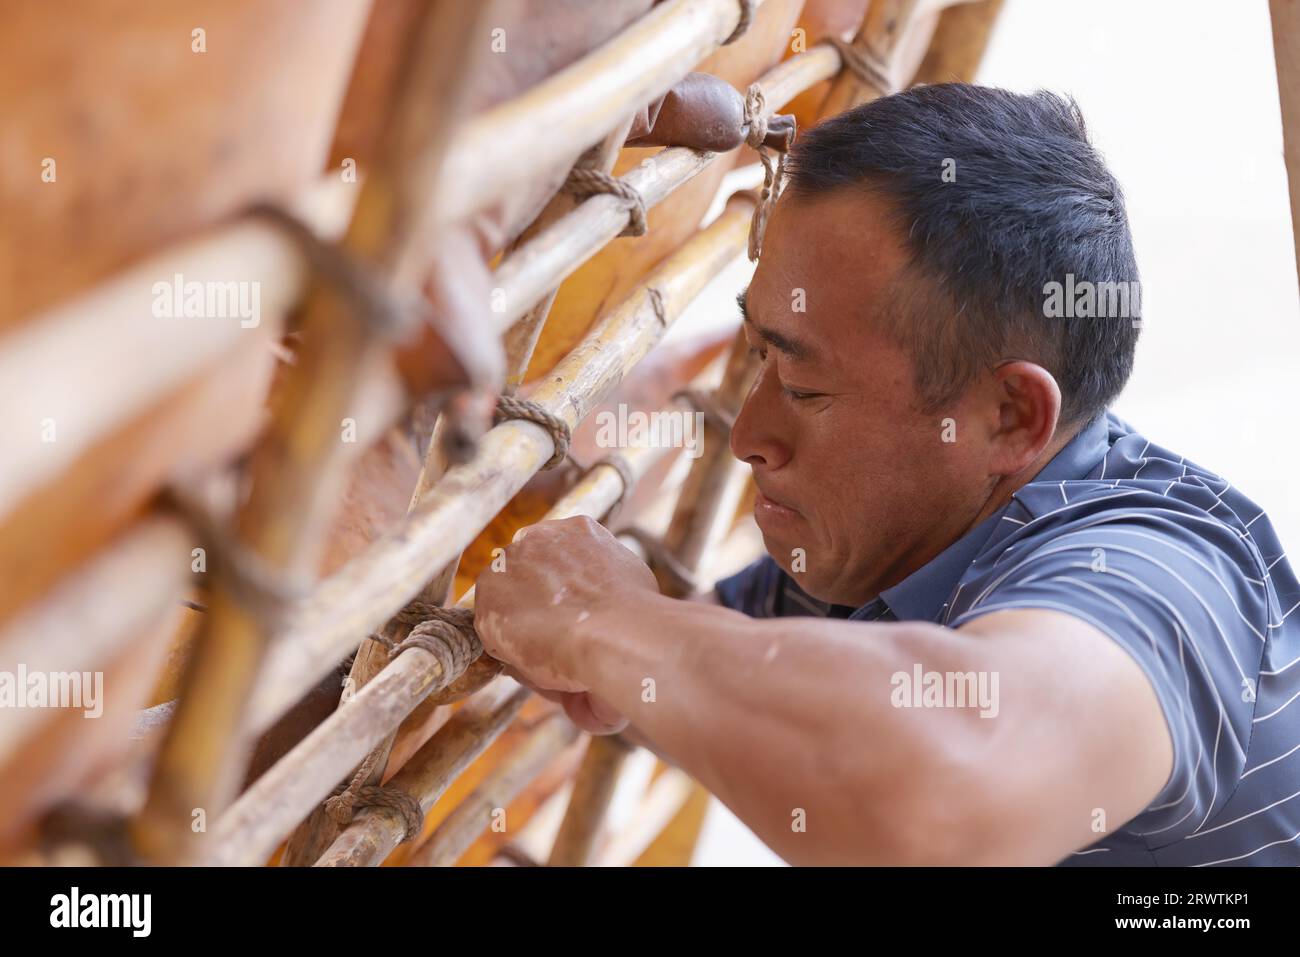 (230921) -- LANZHOU, 21. September 2023 (Xinhua) -- Niu Qiang repariert ein Lammfellfloß in Lanzhou, nordwestchinesische Provinz Gansu, 5. September 2023. Niu Qiang, ein Floßarbeiter aus Huining in der nordwestchinesischen Provinz Gansu, erledigt die Arbeit seit 27 Jahren, seit 16 Jahren, auf dem Lanzhou-Abschnitt des Gelben Flusses. Seit 2.000 Jahren werden Schaffellflöße für den Transport von Gütern auf dem Yellow River verwendet. Mit der Entwicklung der Wirtschaft und des Transportwesens nimmt die Anzahl der Flöße mit der Zeit allmählich ab, und die Transportform hat sich heute zu einer Touristenattraktion auf dem Yello entwickelt Stockfoto